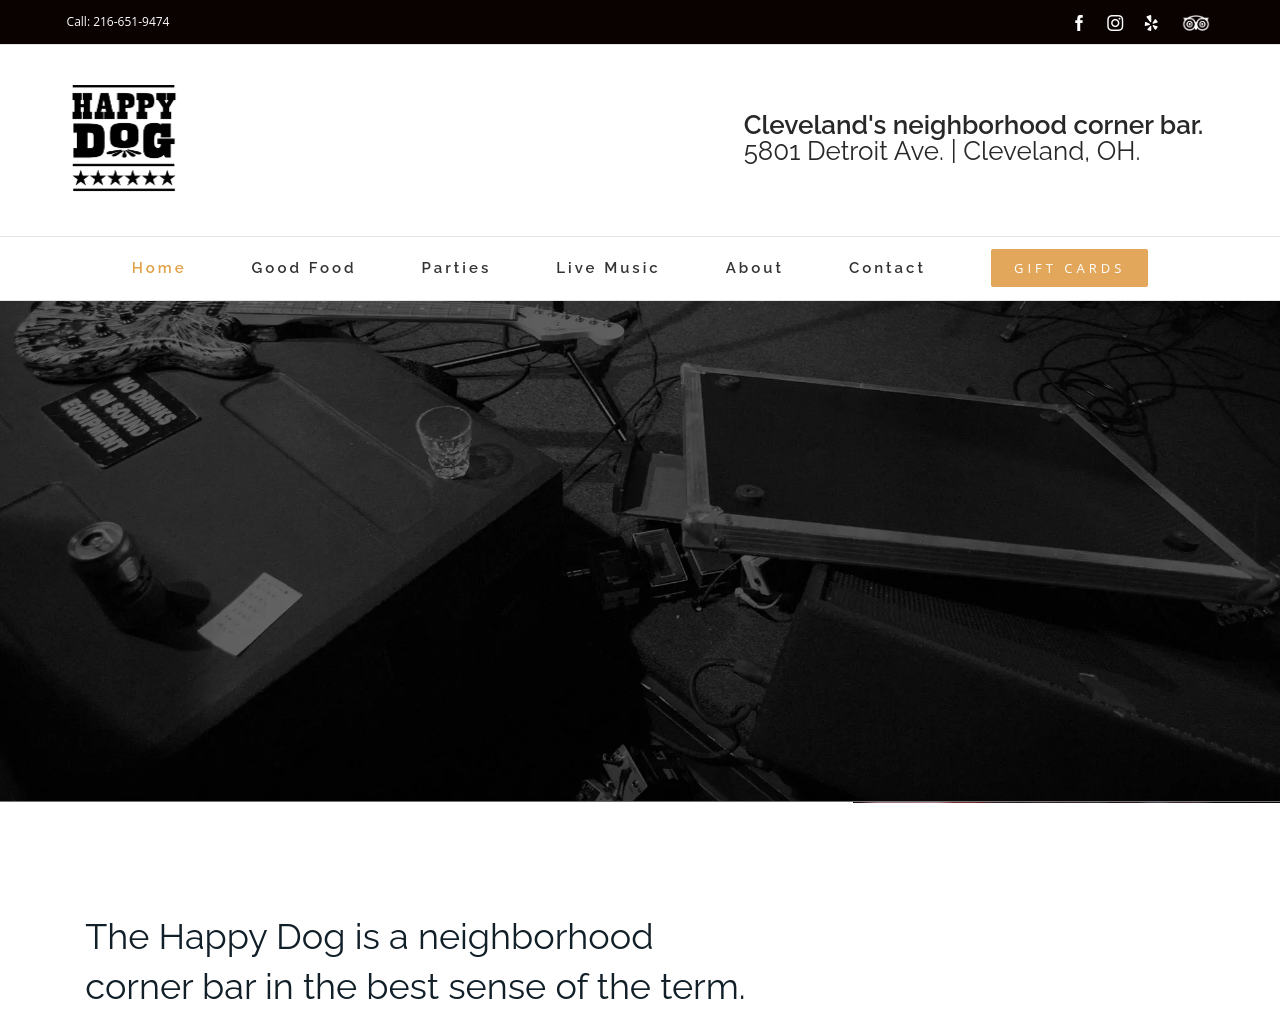 happydogcleveland.com